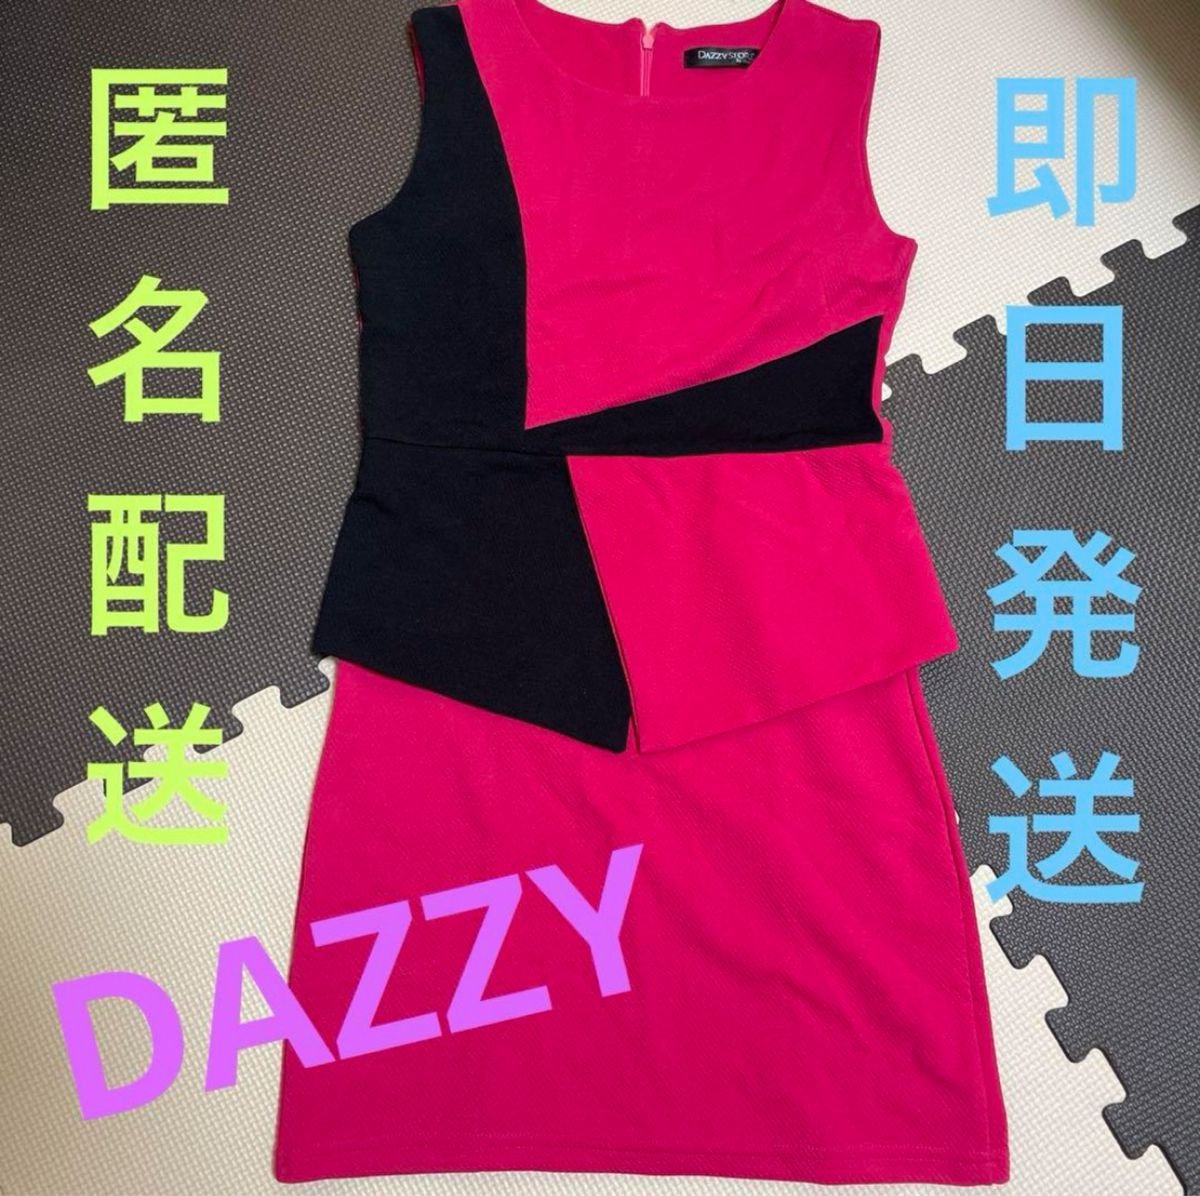 DAZZY STORE キャバ ドレス ミニ ワンピース ピンク 美品